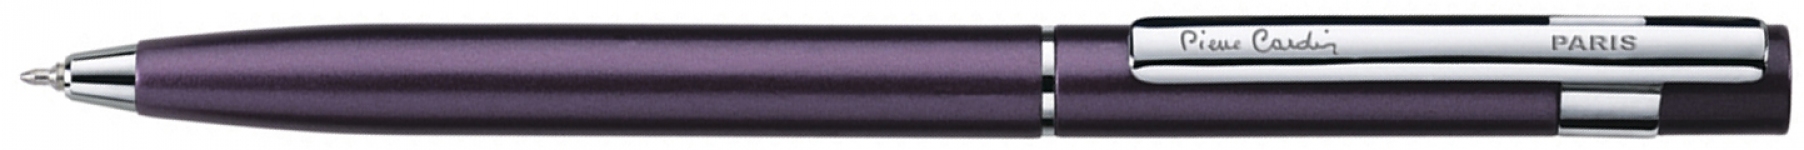 Шариковая ручка Pierre Cardin EASY. Корпус -алюминий, детали дизайна - сталь и хром. Цвет - вишневый